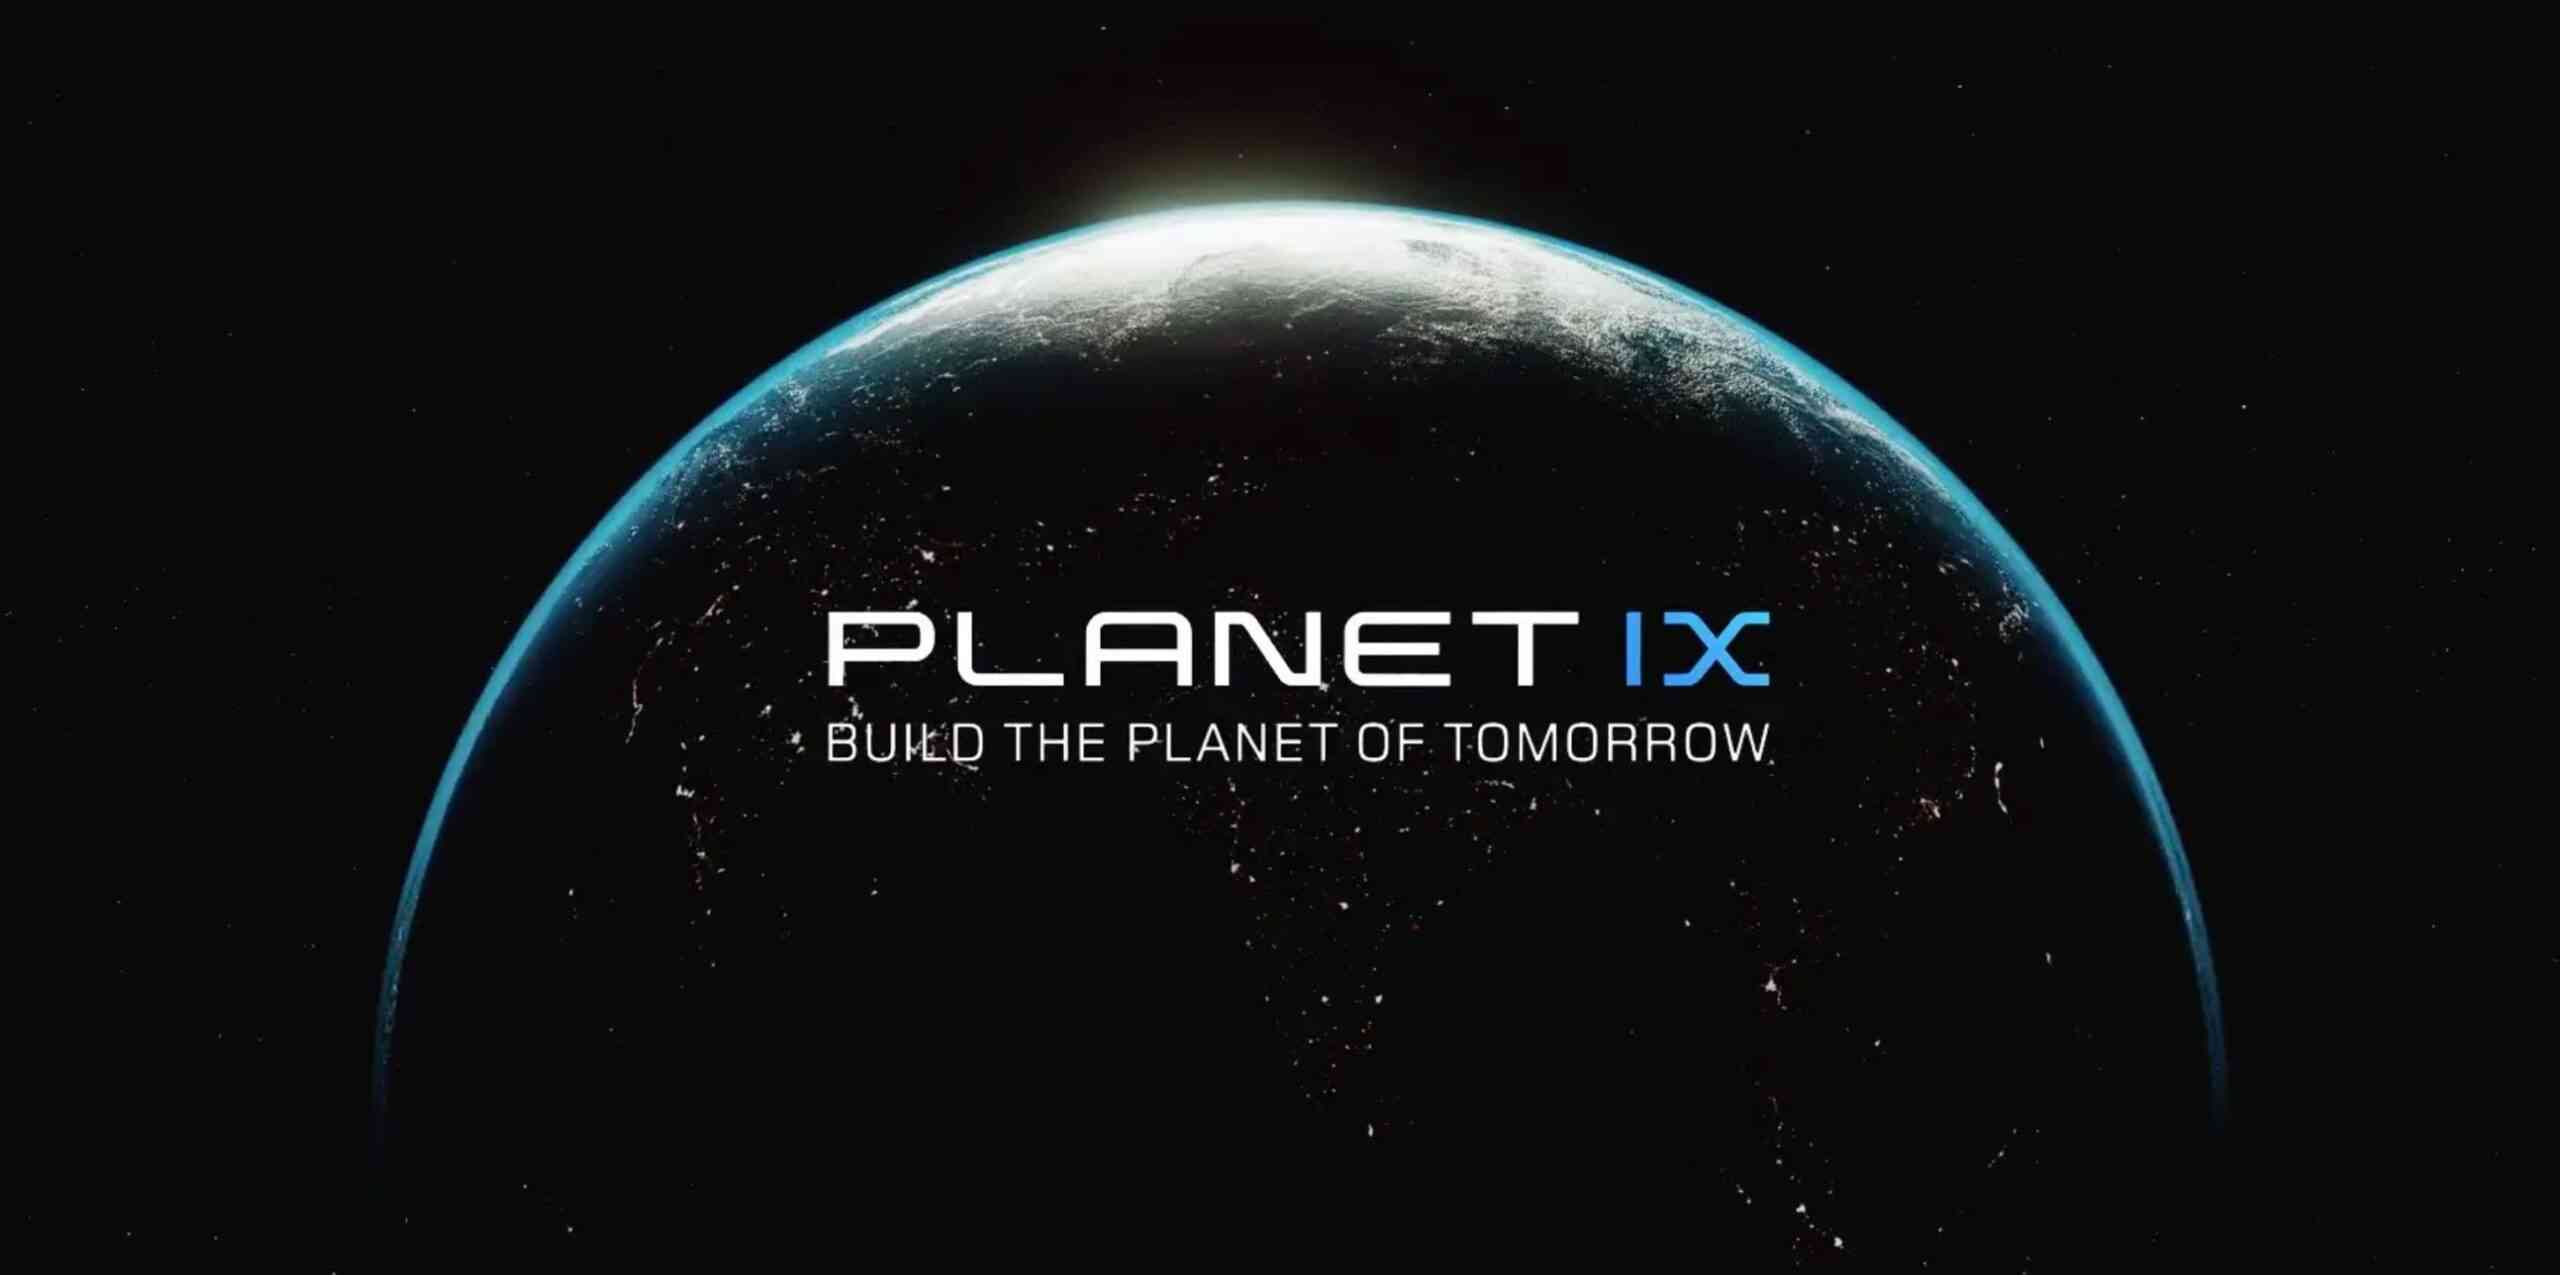 Planeet IX - Speloverzicht